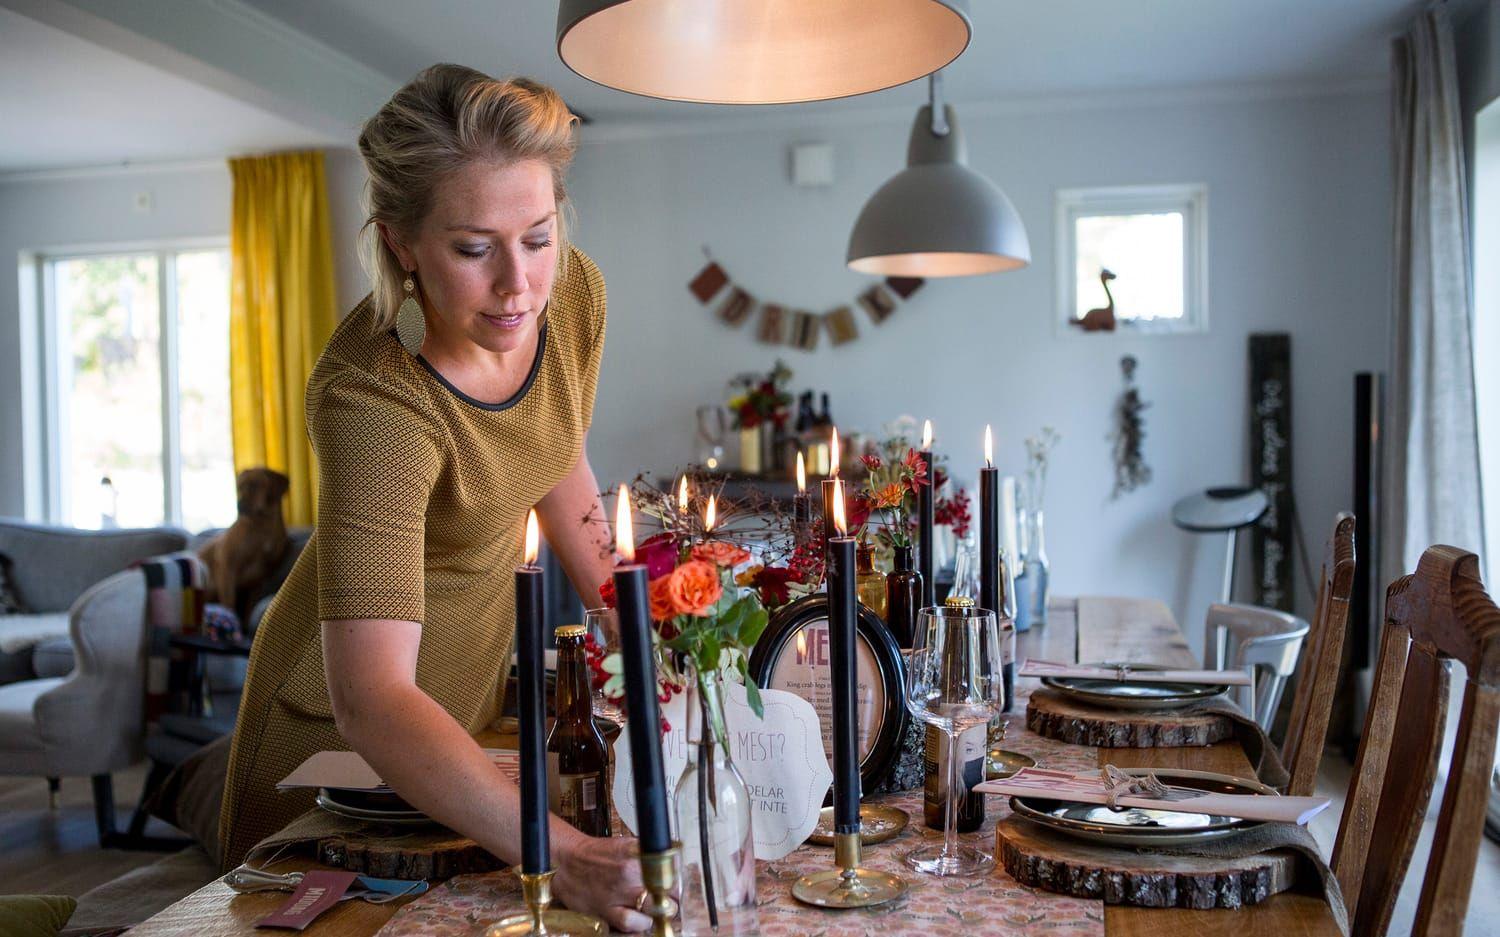 Grafiska formgivaren Lina Eriksson älskar att anordna fester. Intresset för inredning, styling och dekorationer ledde till att hon startade eget som "kalasmakerska". "Jag ser till att festen får en röd tråd", säger hon. Foto: Christine Olsson/TT